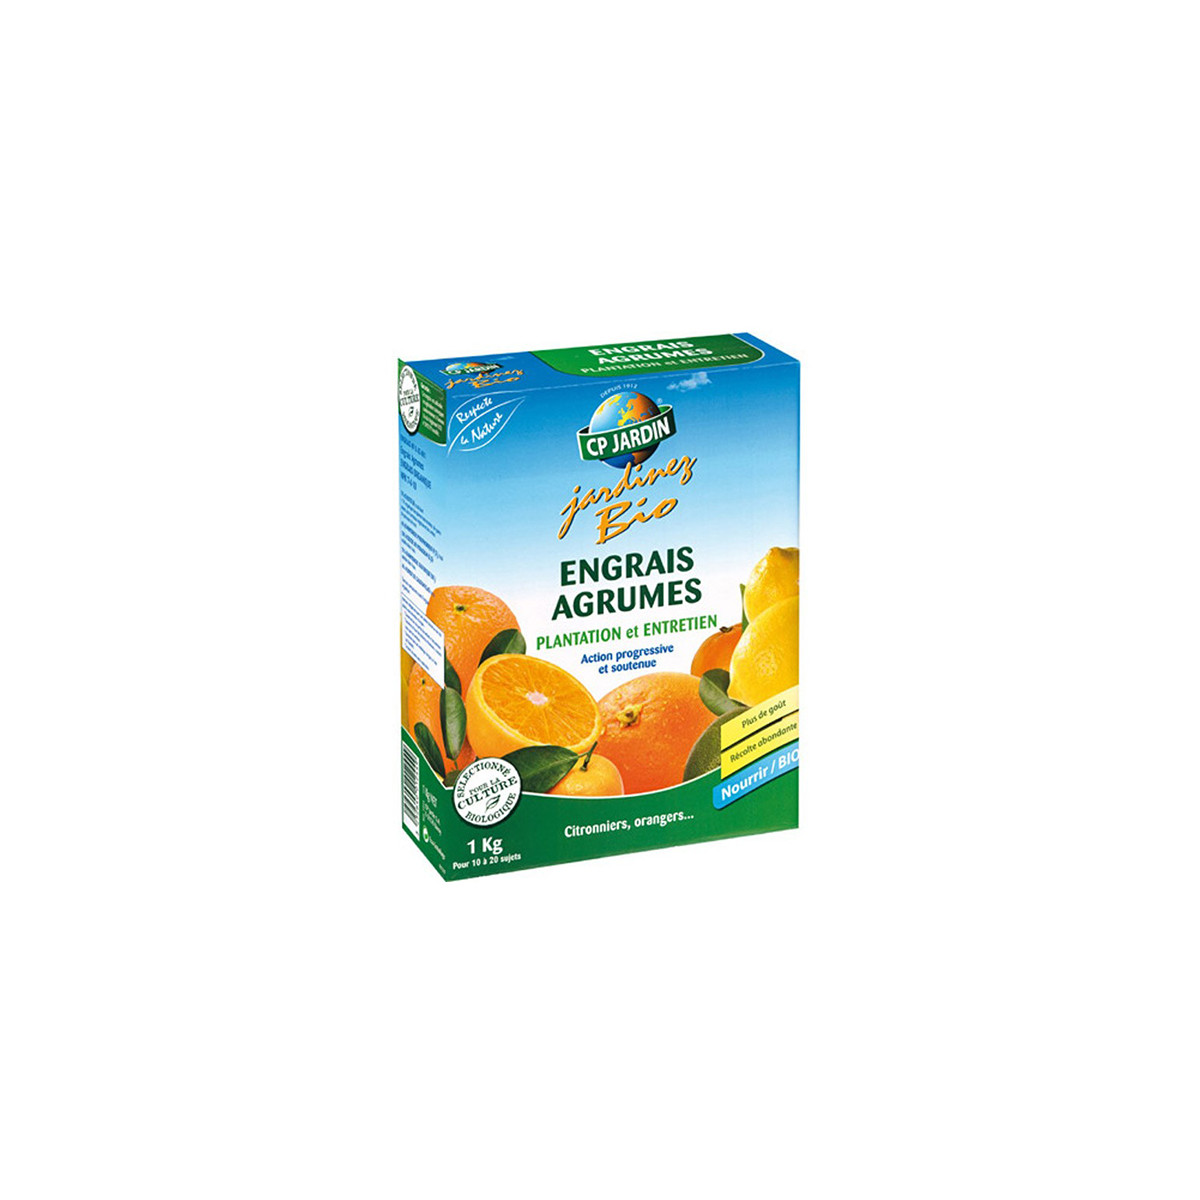 Engrais bio pour agrumes : citronniers, orangers 1kg